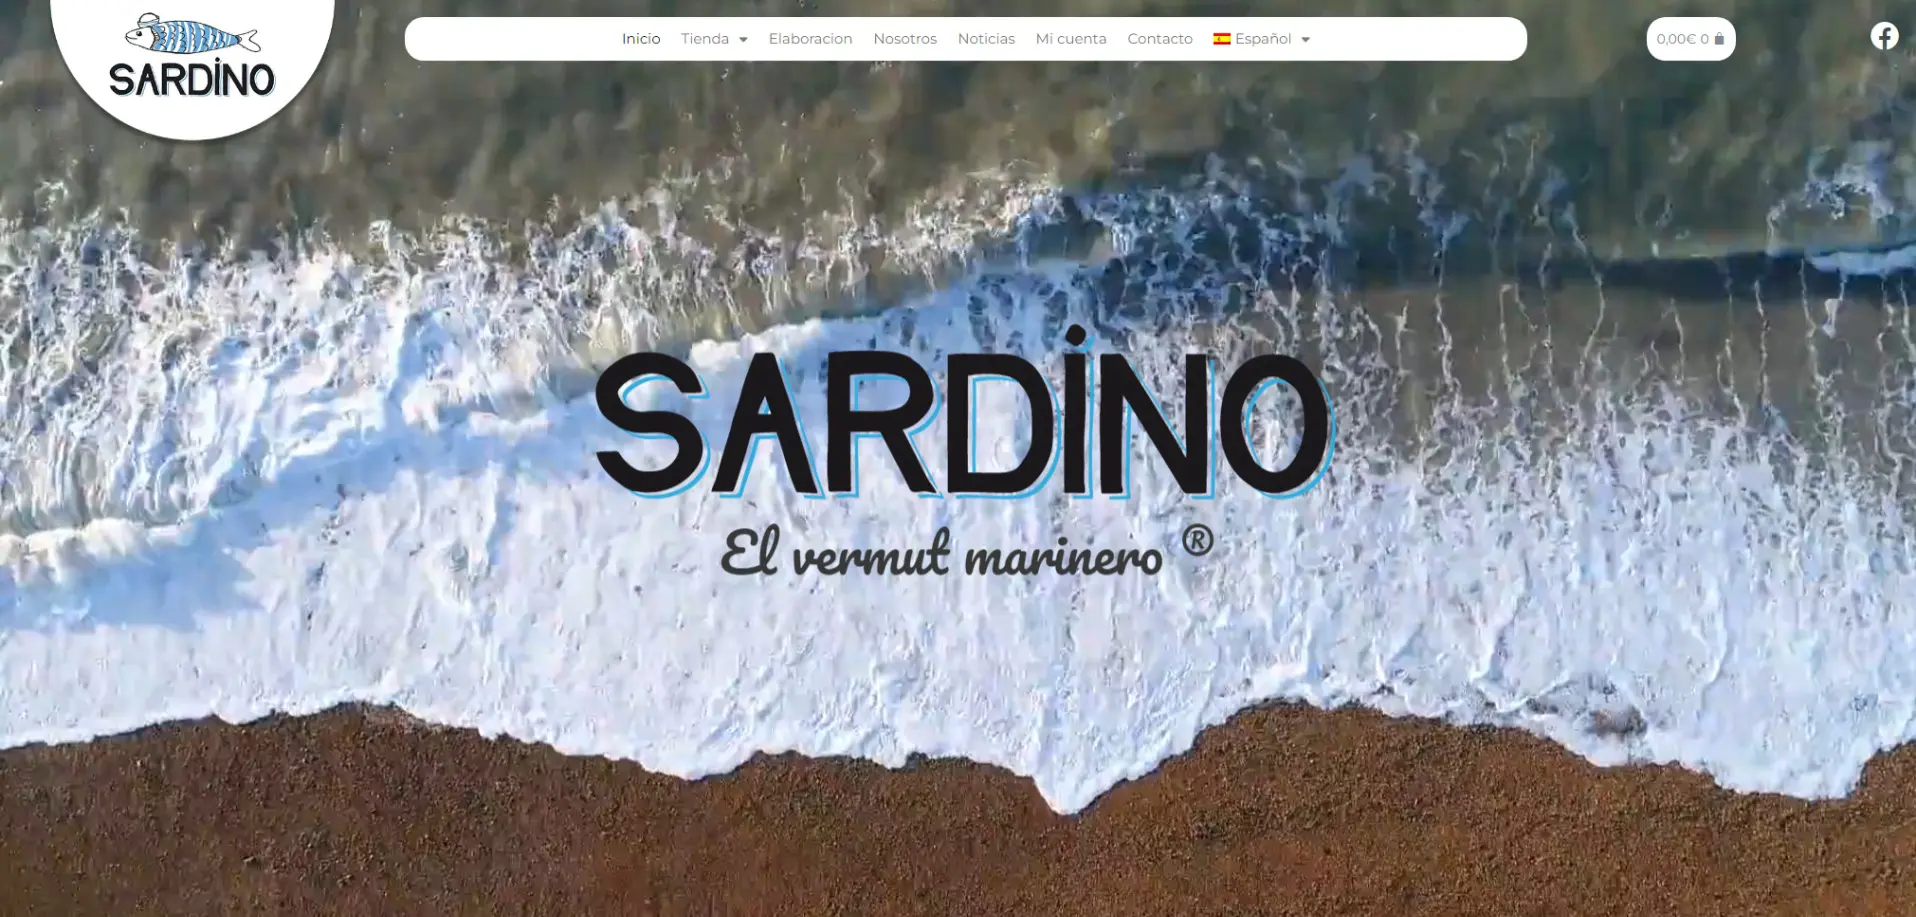 Sardino Ejemplo de pagina con diseño web en Santiago de compostela por TerritorioWeb